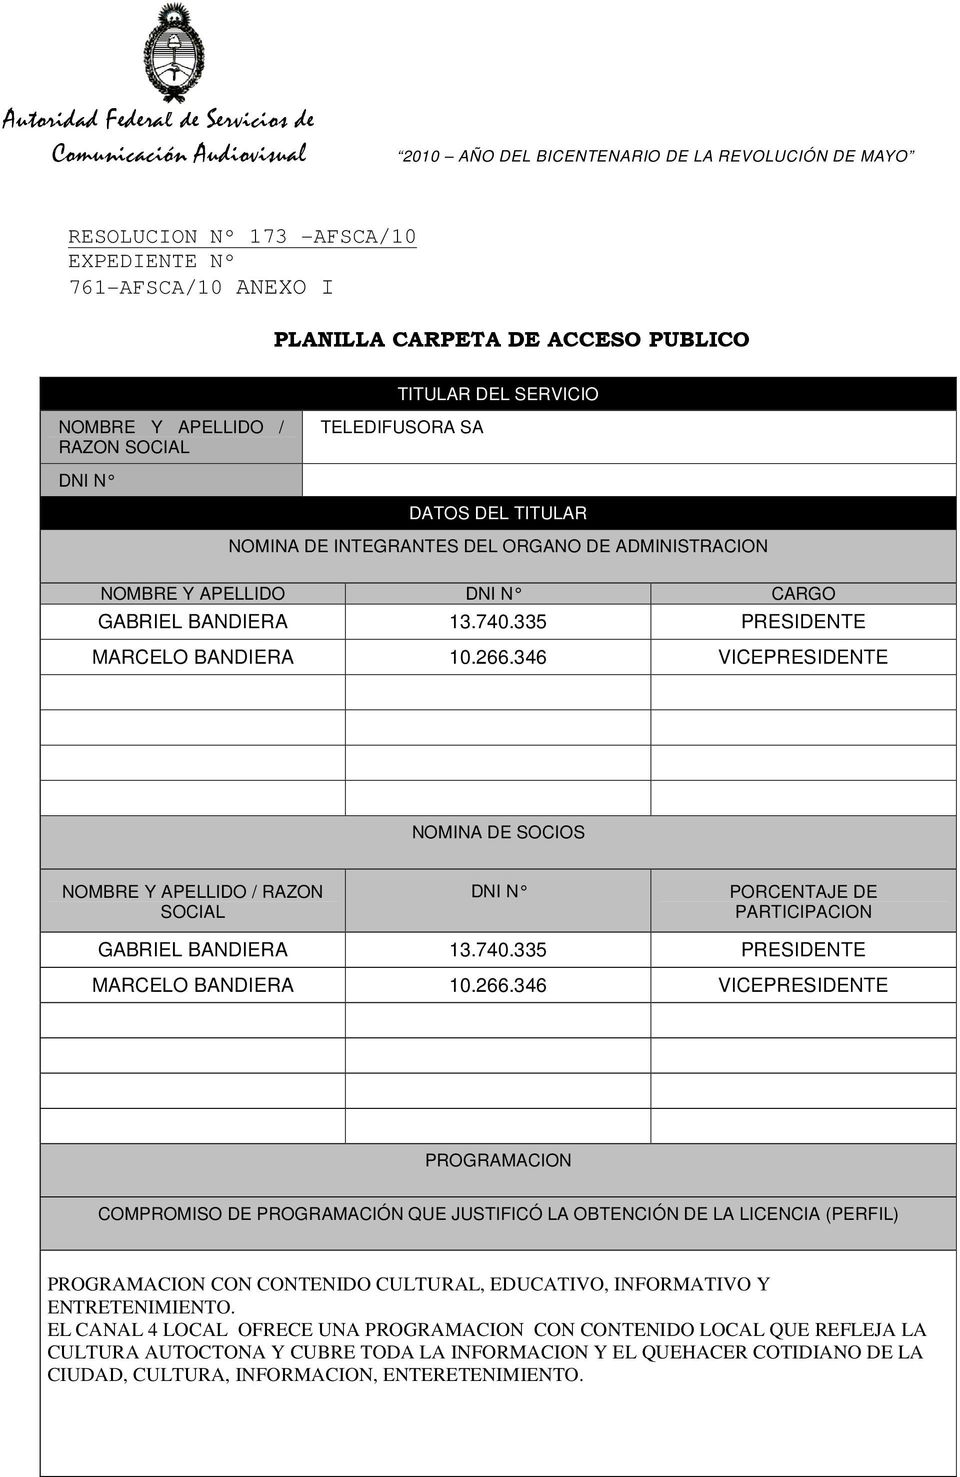 346 VICEPRESIDENTE NOMINA DE SOCIOS NOMBRE Y APELLIDO / RAZON SOCIAL DNI N PORCENTAJE DE PARTICIPACION GABRIEL BANDIERA 13.740.335 PRESIDENTE MARCELO BANDIERA 10.266.